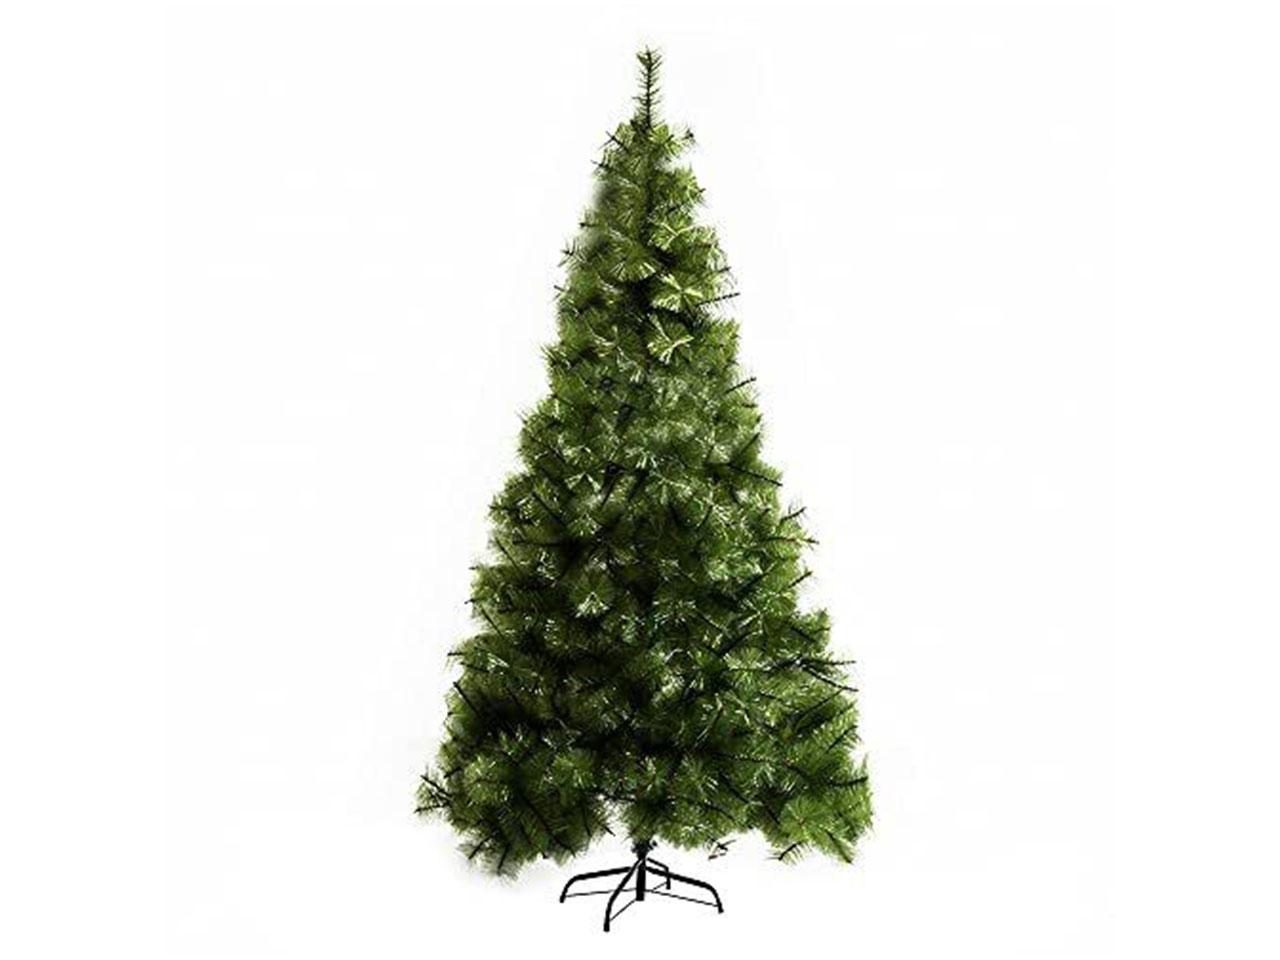 Umělý vánoční stromek 830-137, 505 hustých větví, autentický, s kovovým stojanem, PET, zelený, 90 x 210 cm